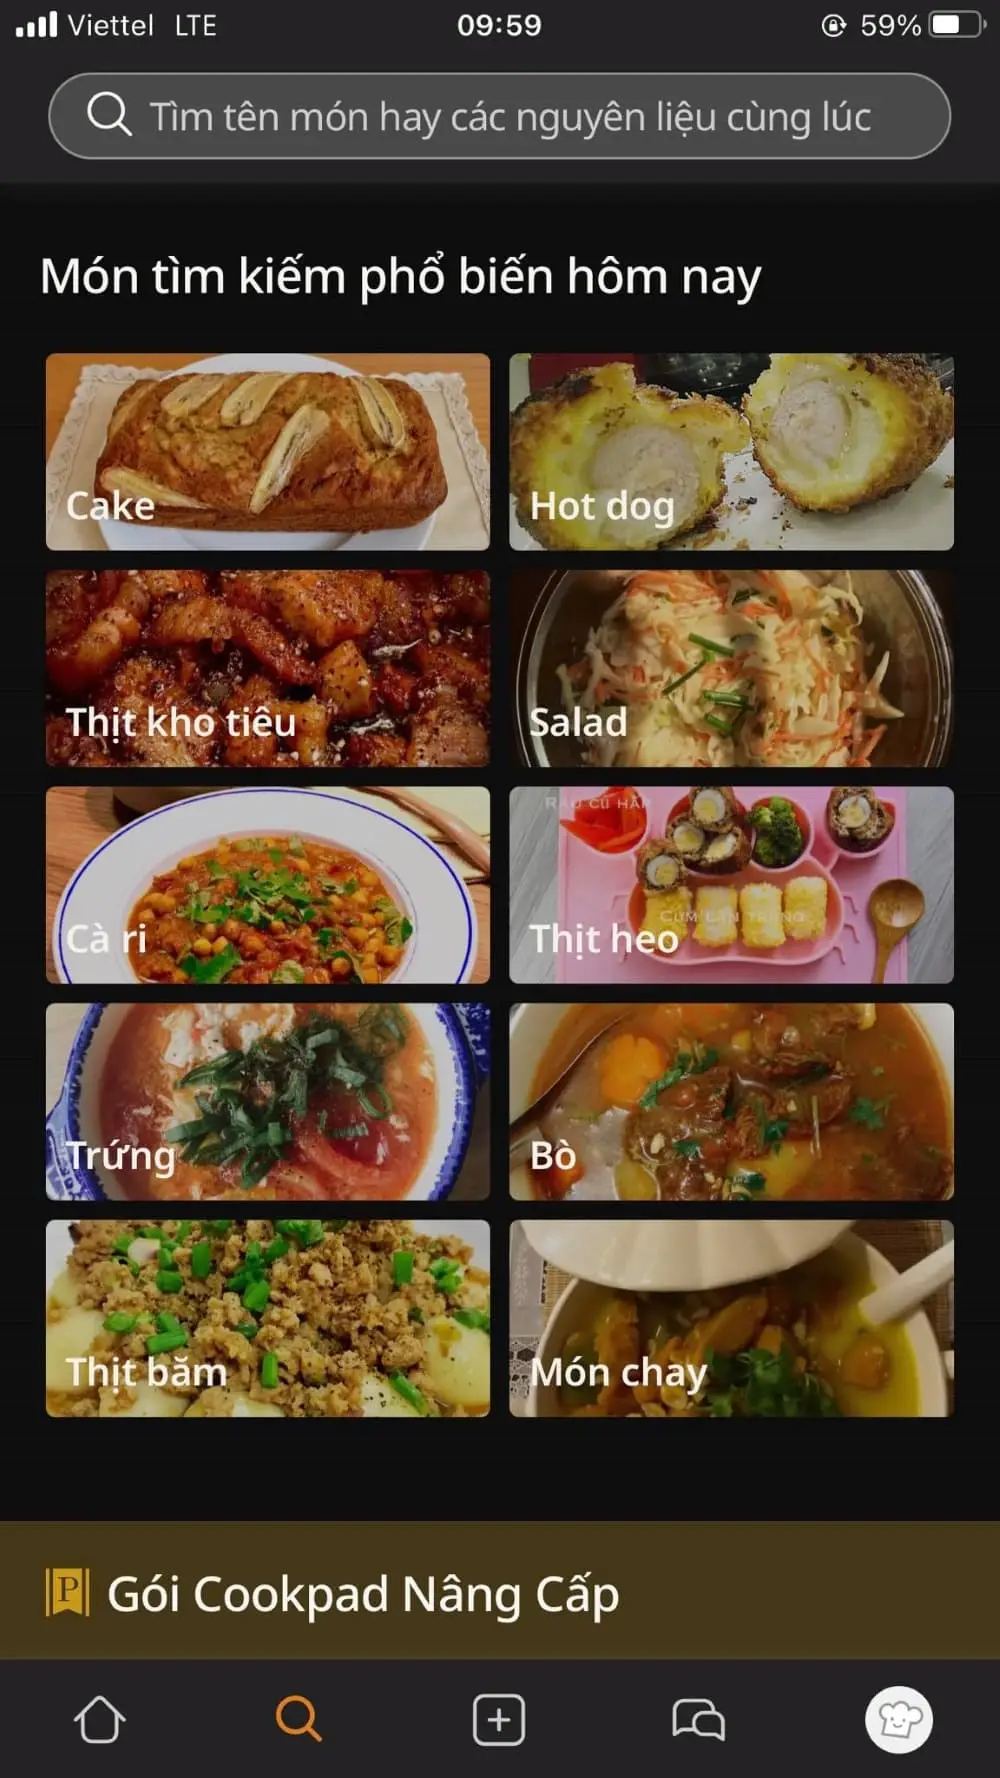 Thông tin cơ bản về ứng dụng Cookpad